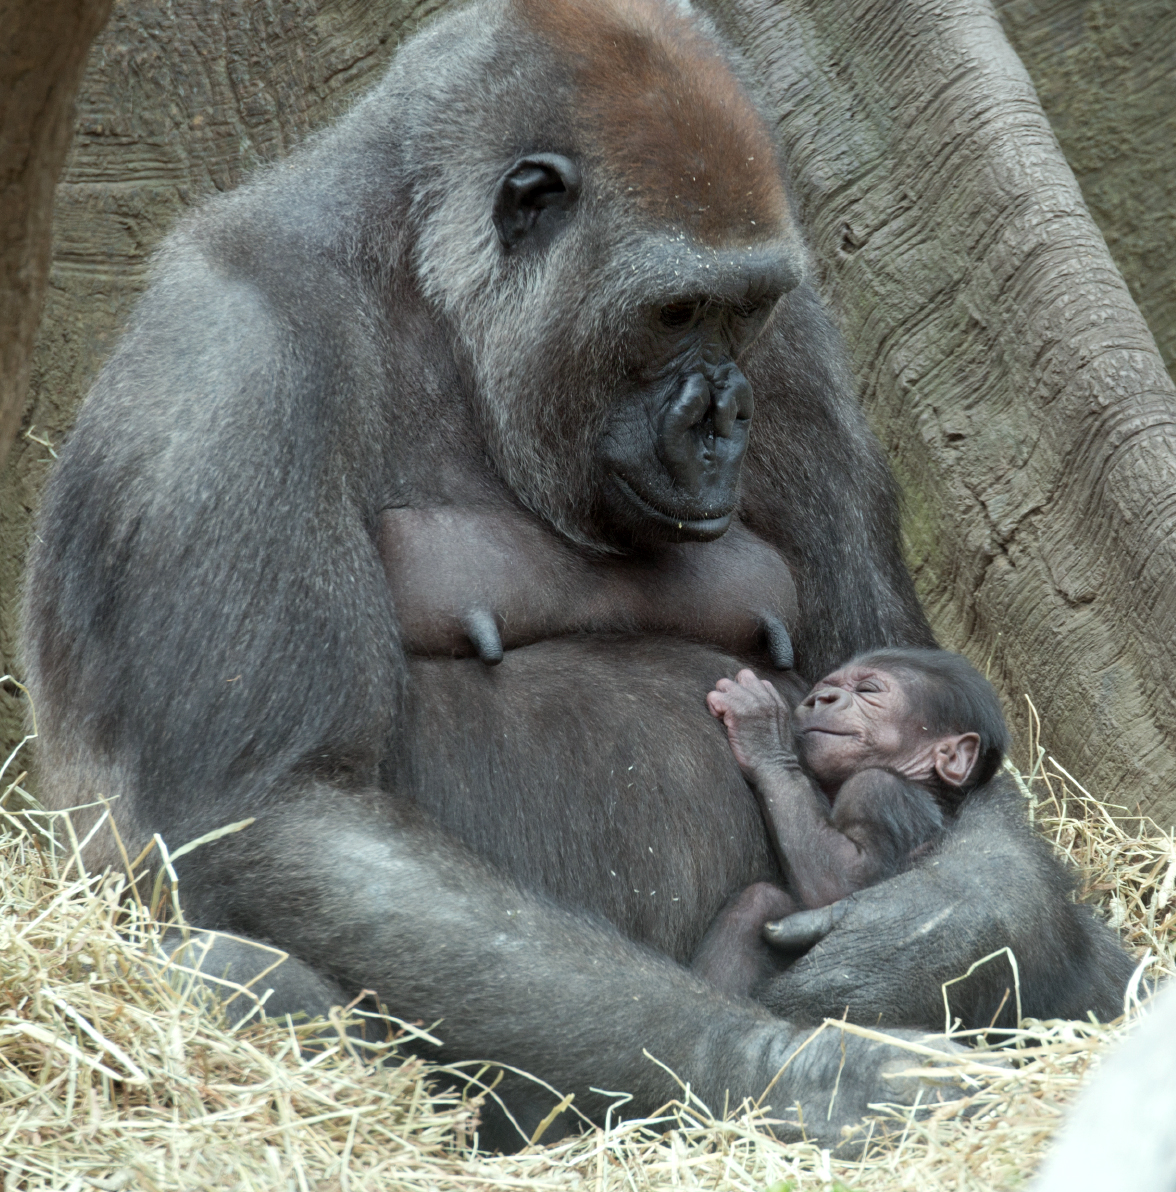 Tuti, a female Western Lowland gorilla looks down at her sleeping baby at the Bronx Zoo in New York. With the addition of two new baby gorillas recently born at the zoo, the Bronx Zoo's Congo Gorilla Forest is now home to 20 gorillas. (Julie Larsen Maher—WCS/AP)